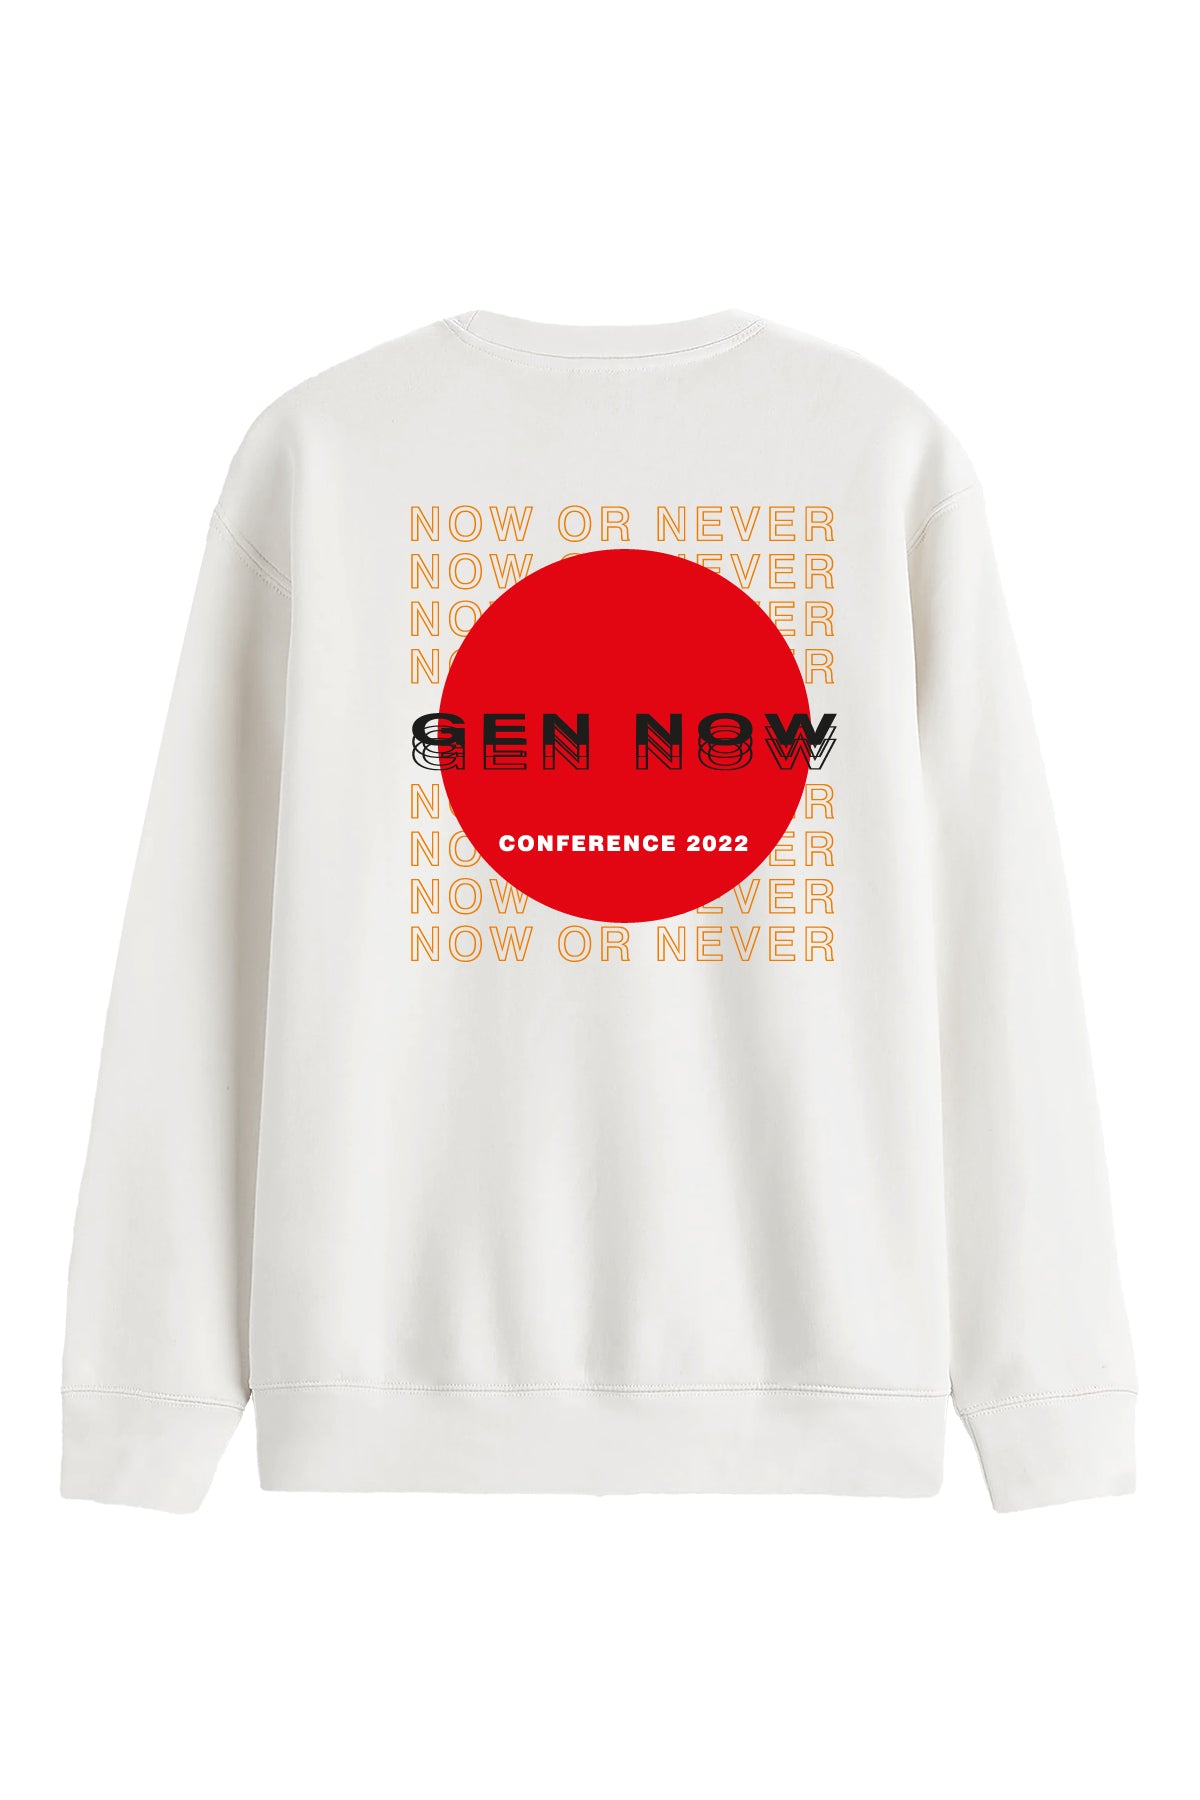 Gen Now - Sweatshirt